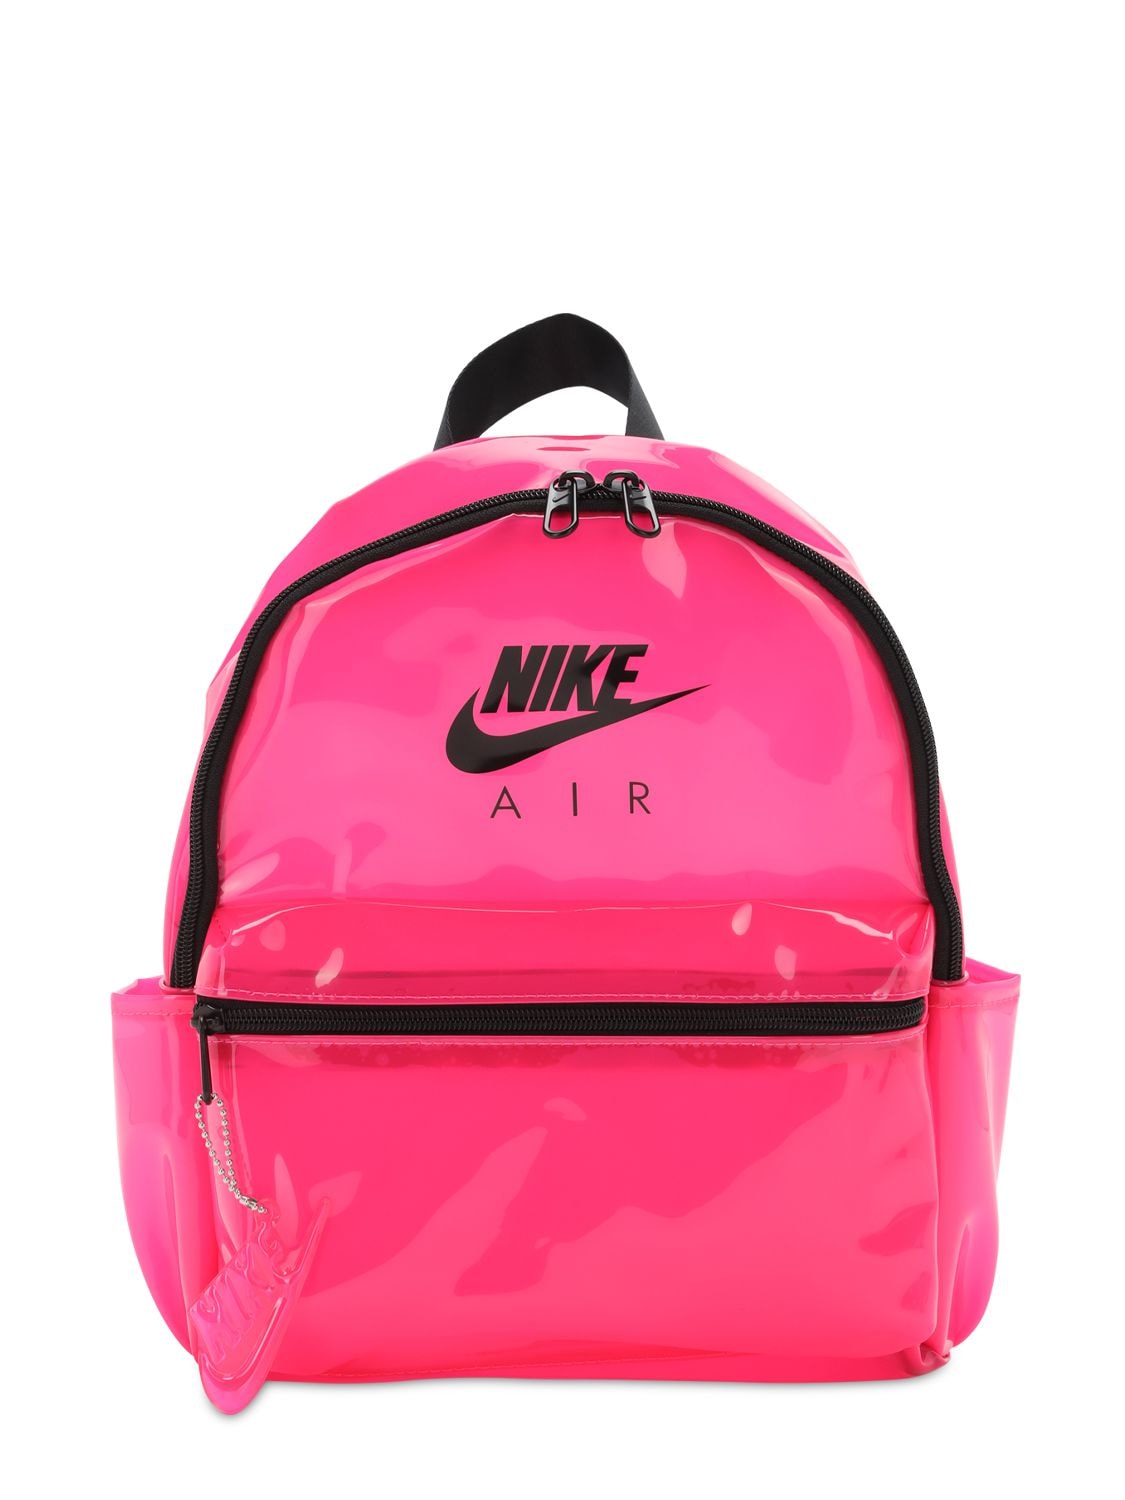 nike mini backpack pink